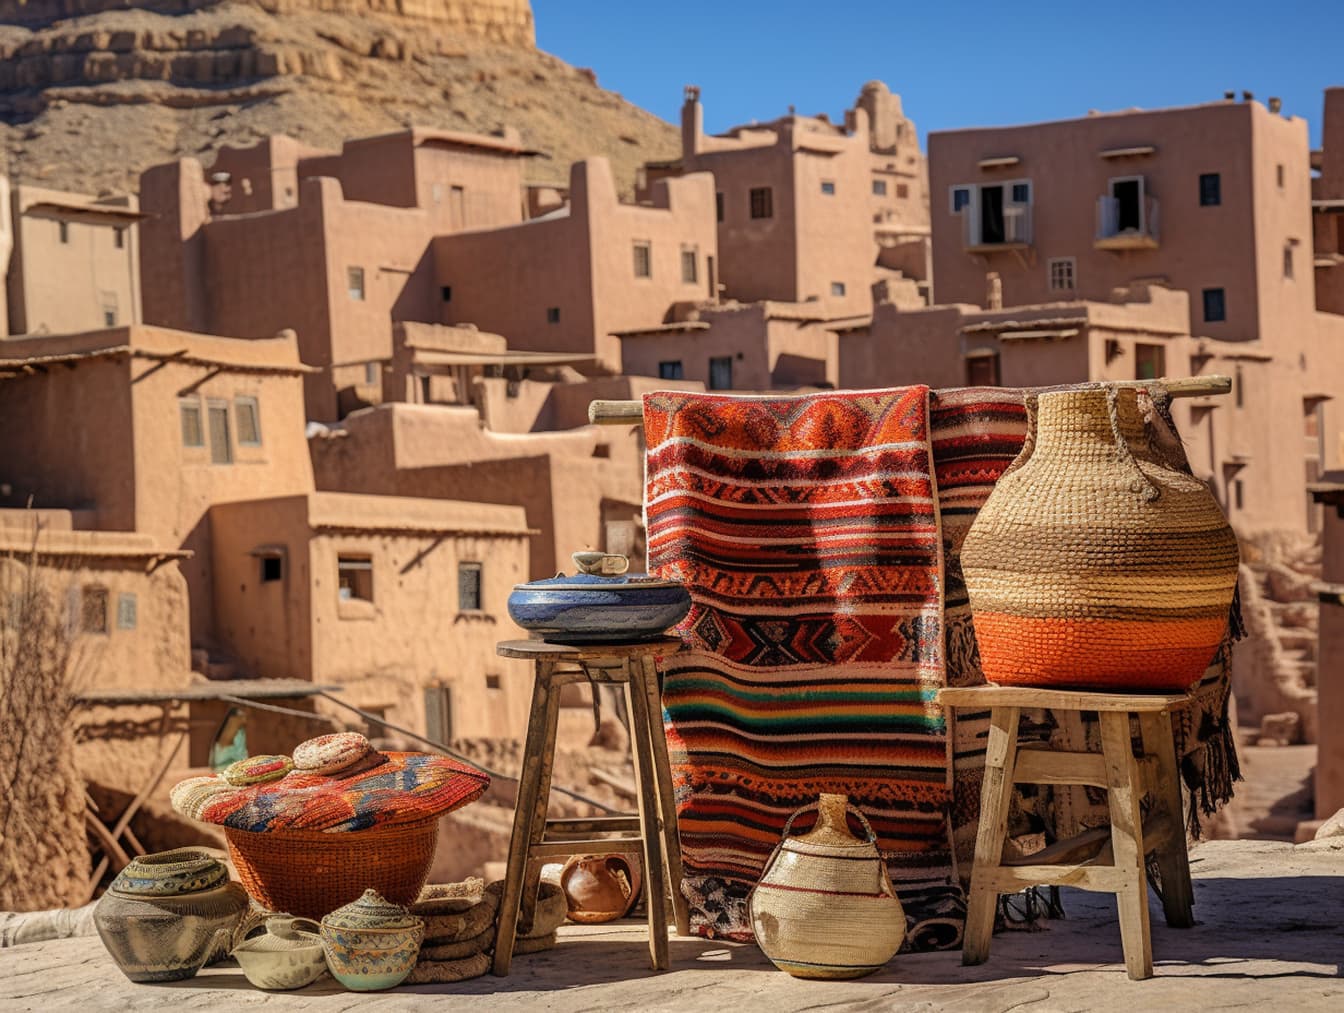 Λαϊκή αγορά στο Μαρόκο με καλάθια και κεραμικά